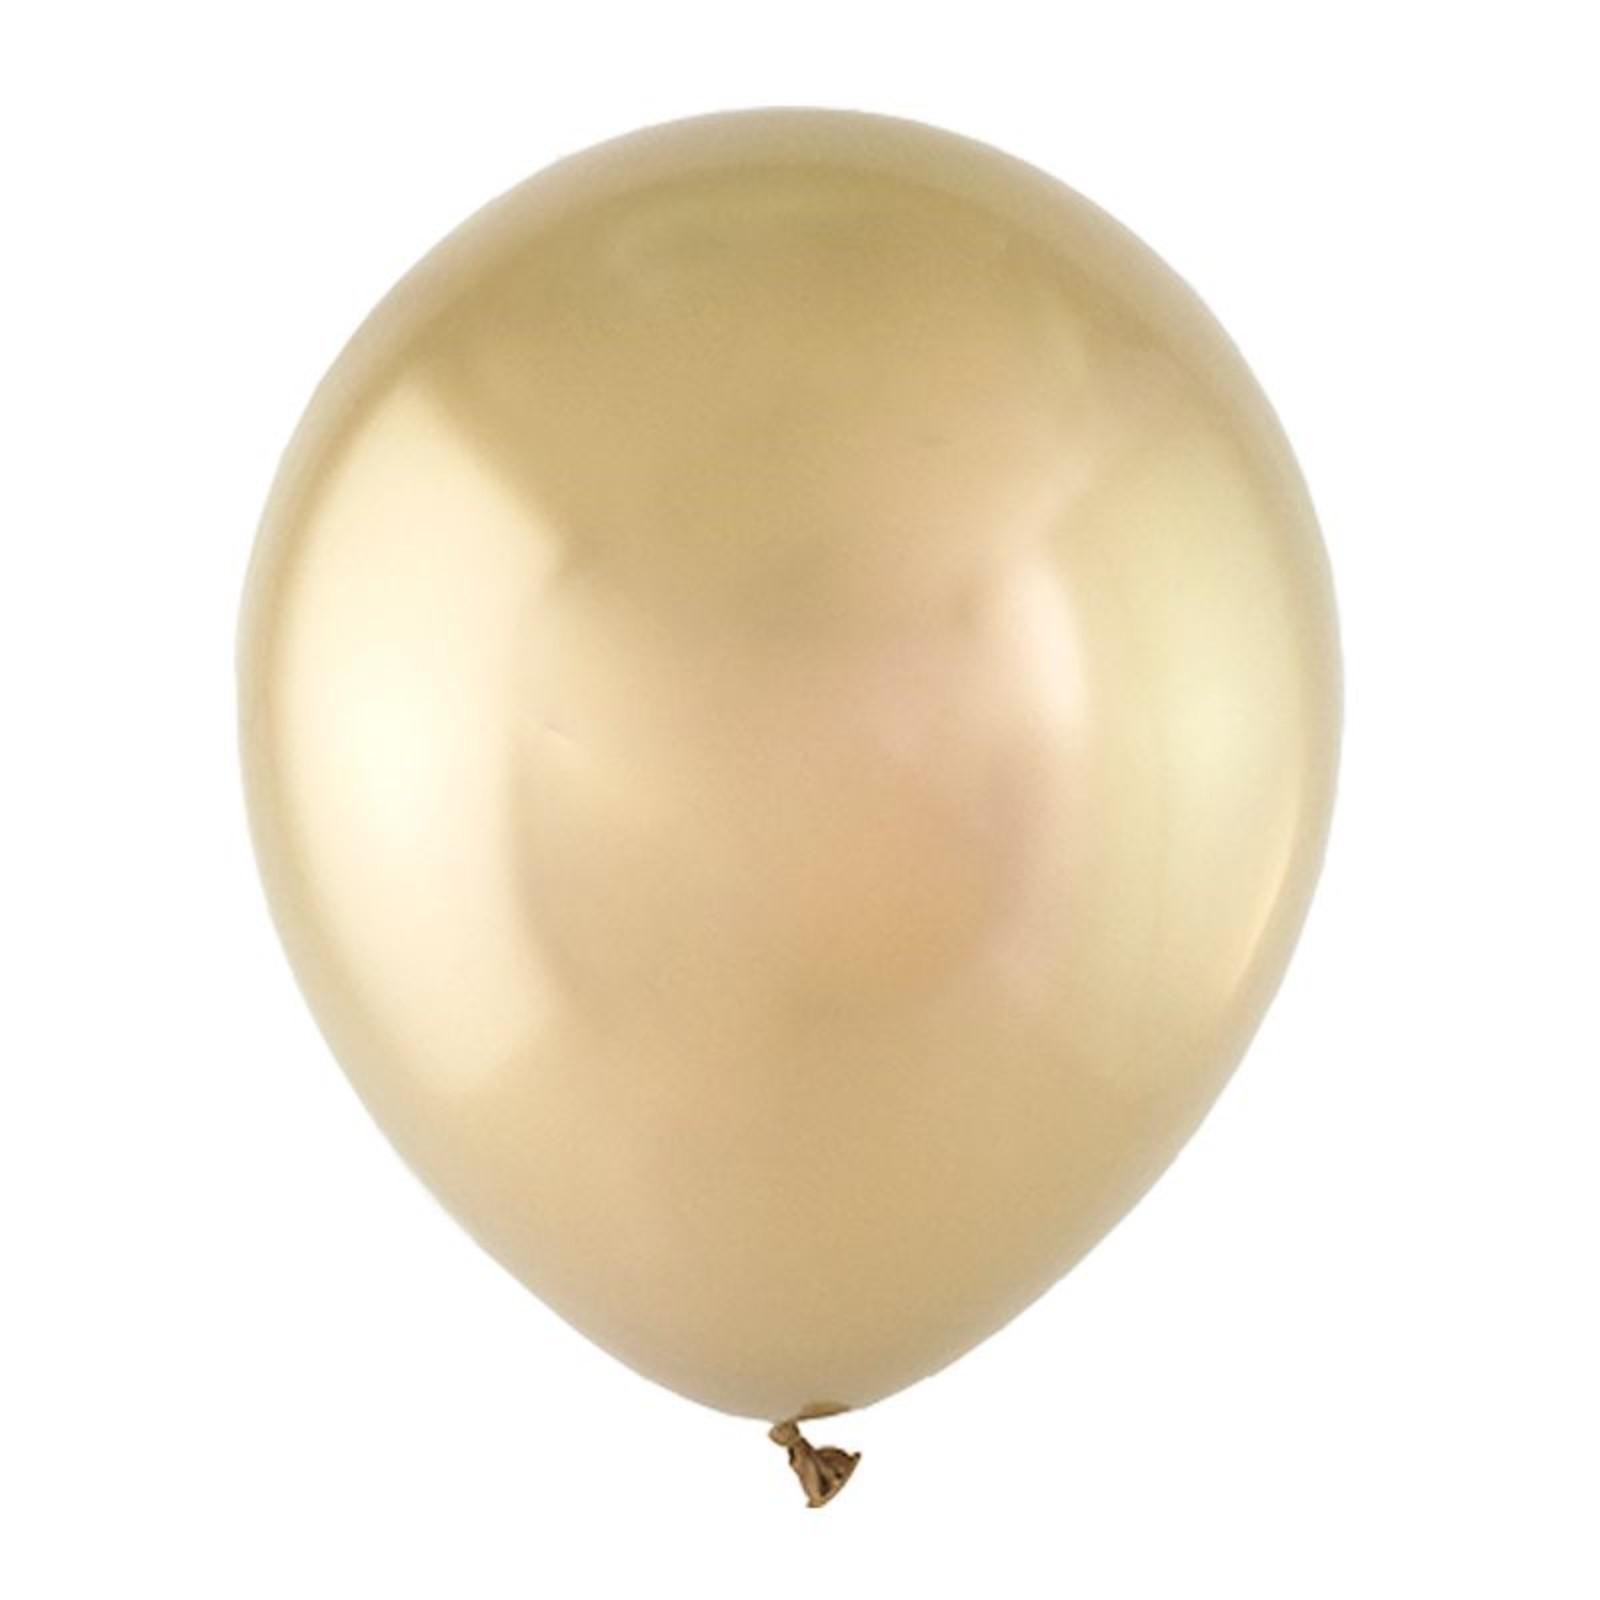 Шар хром золото. Т шар (12"/30 см) белое золото зеркальный 50 шт. Шар золото металлик. Латексные шарики.